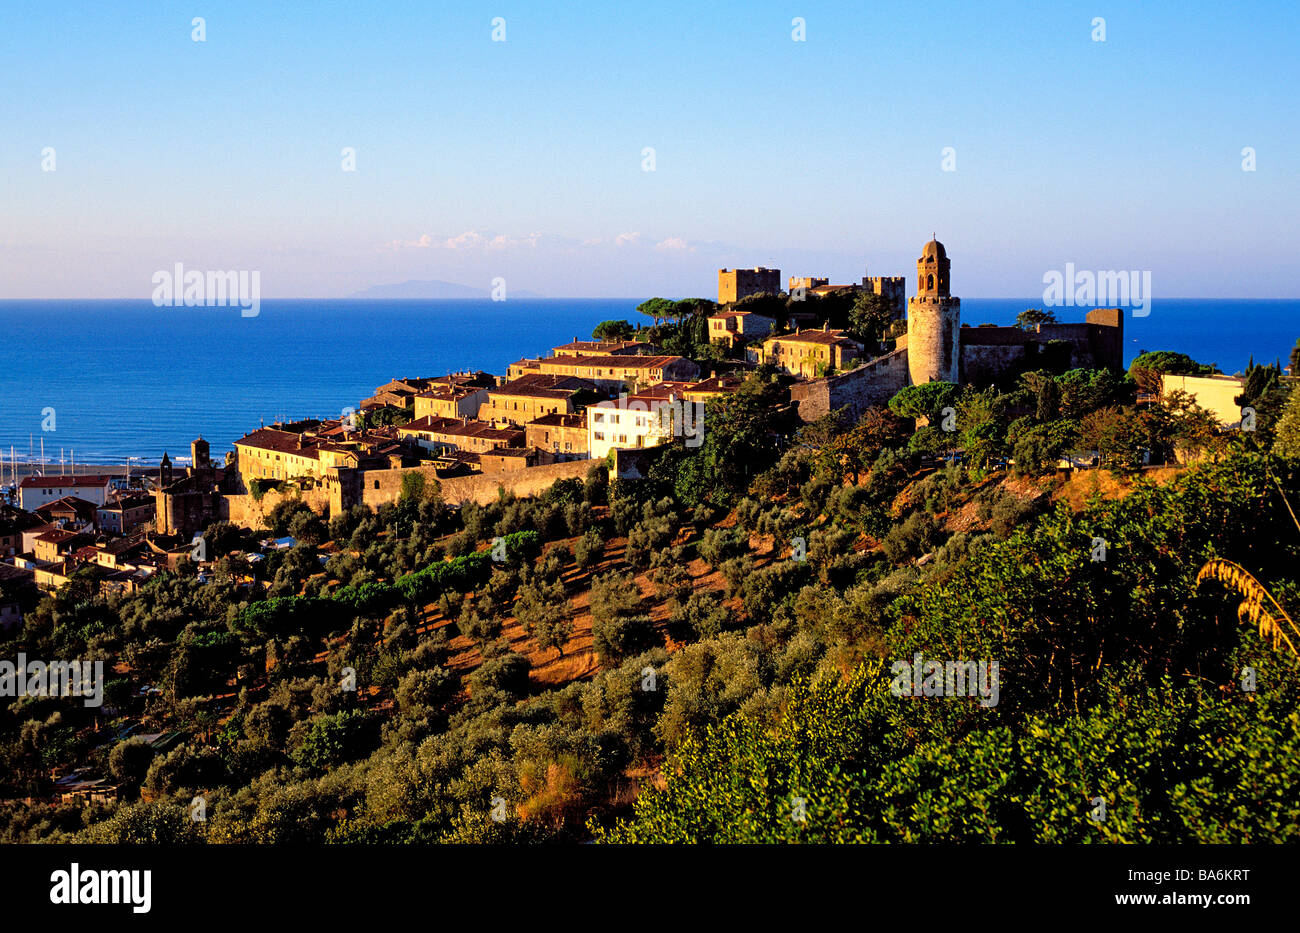 Italy, Tuscany, Grosseto province, Castiglione della Pescaia on the ...